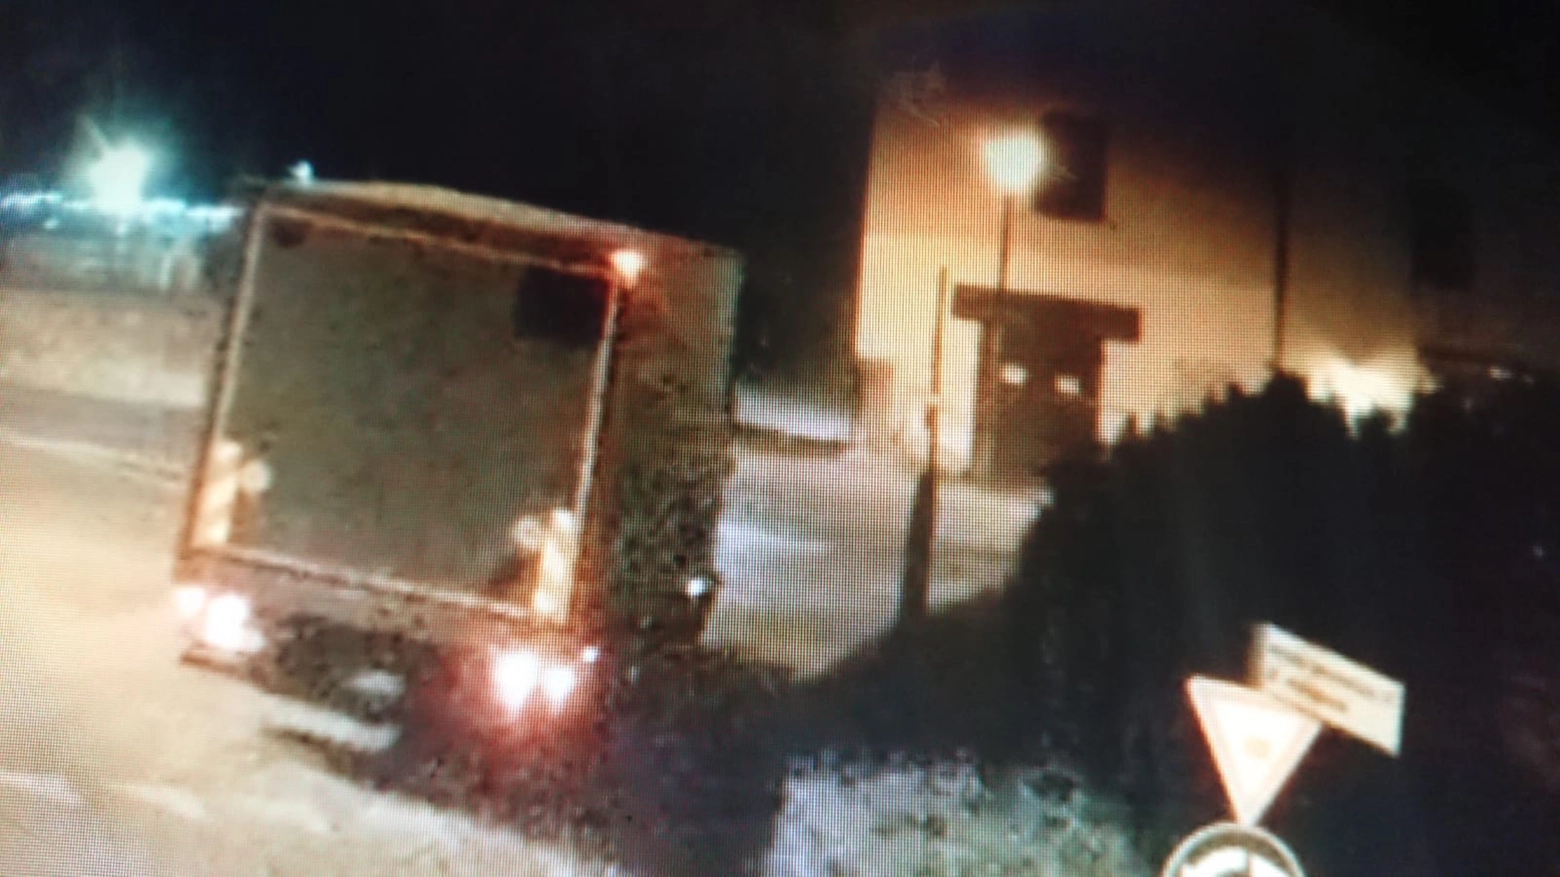 L'immagine delle telecamere che mostra il furgone senza specchietto